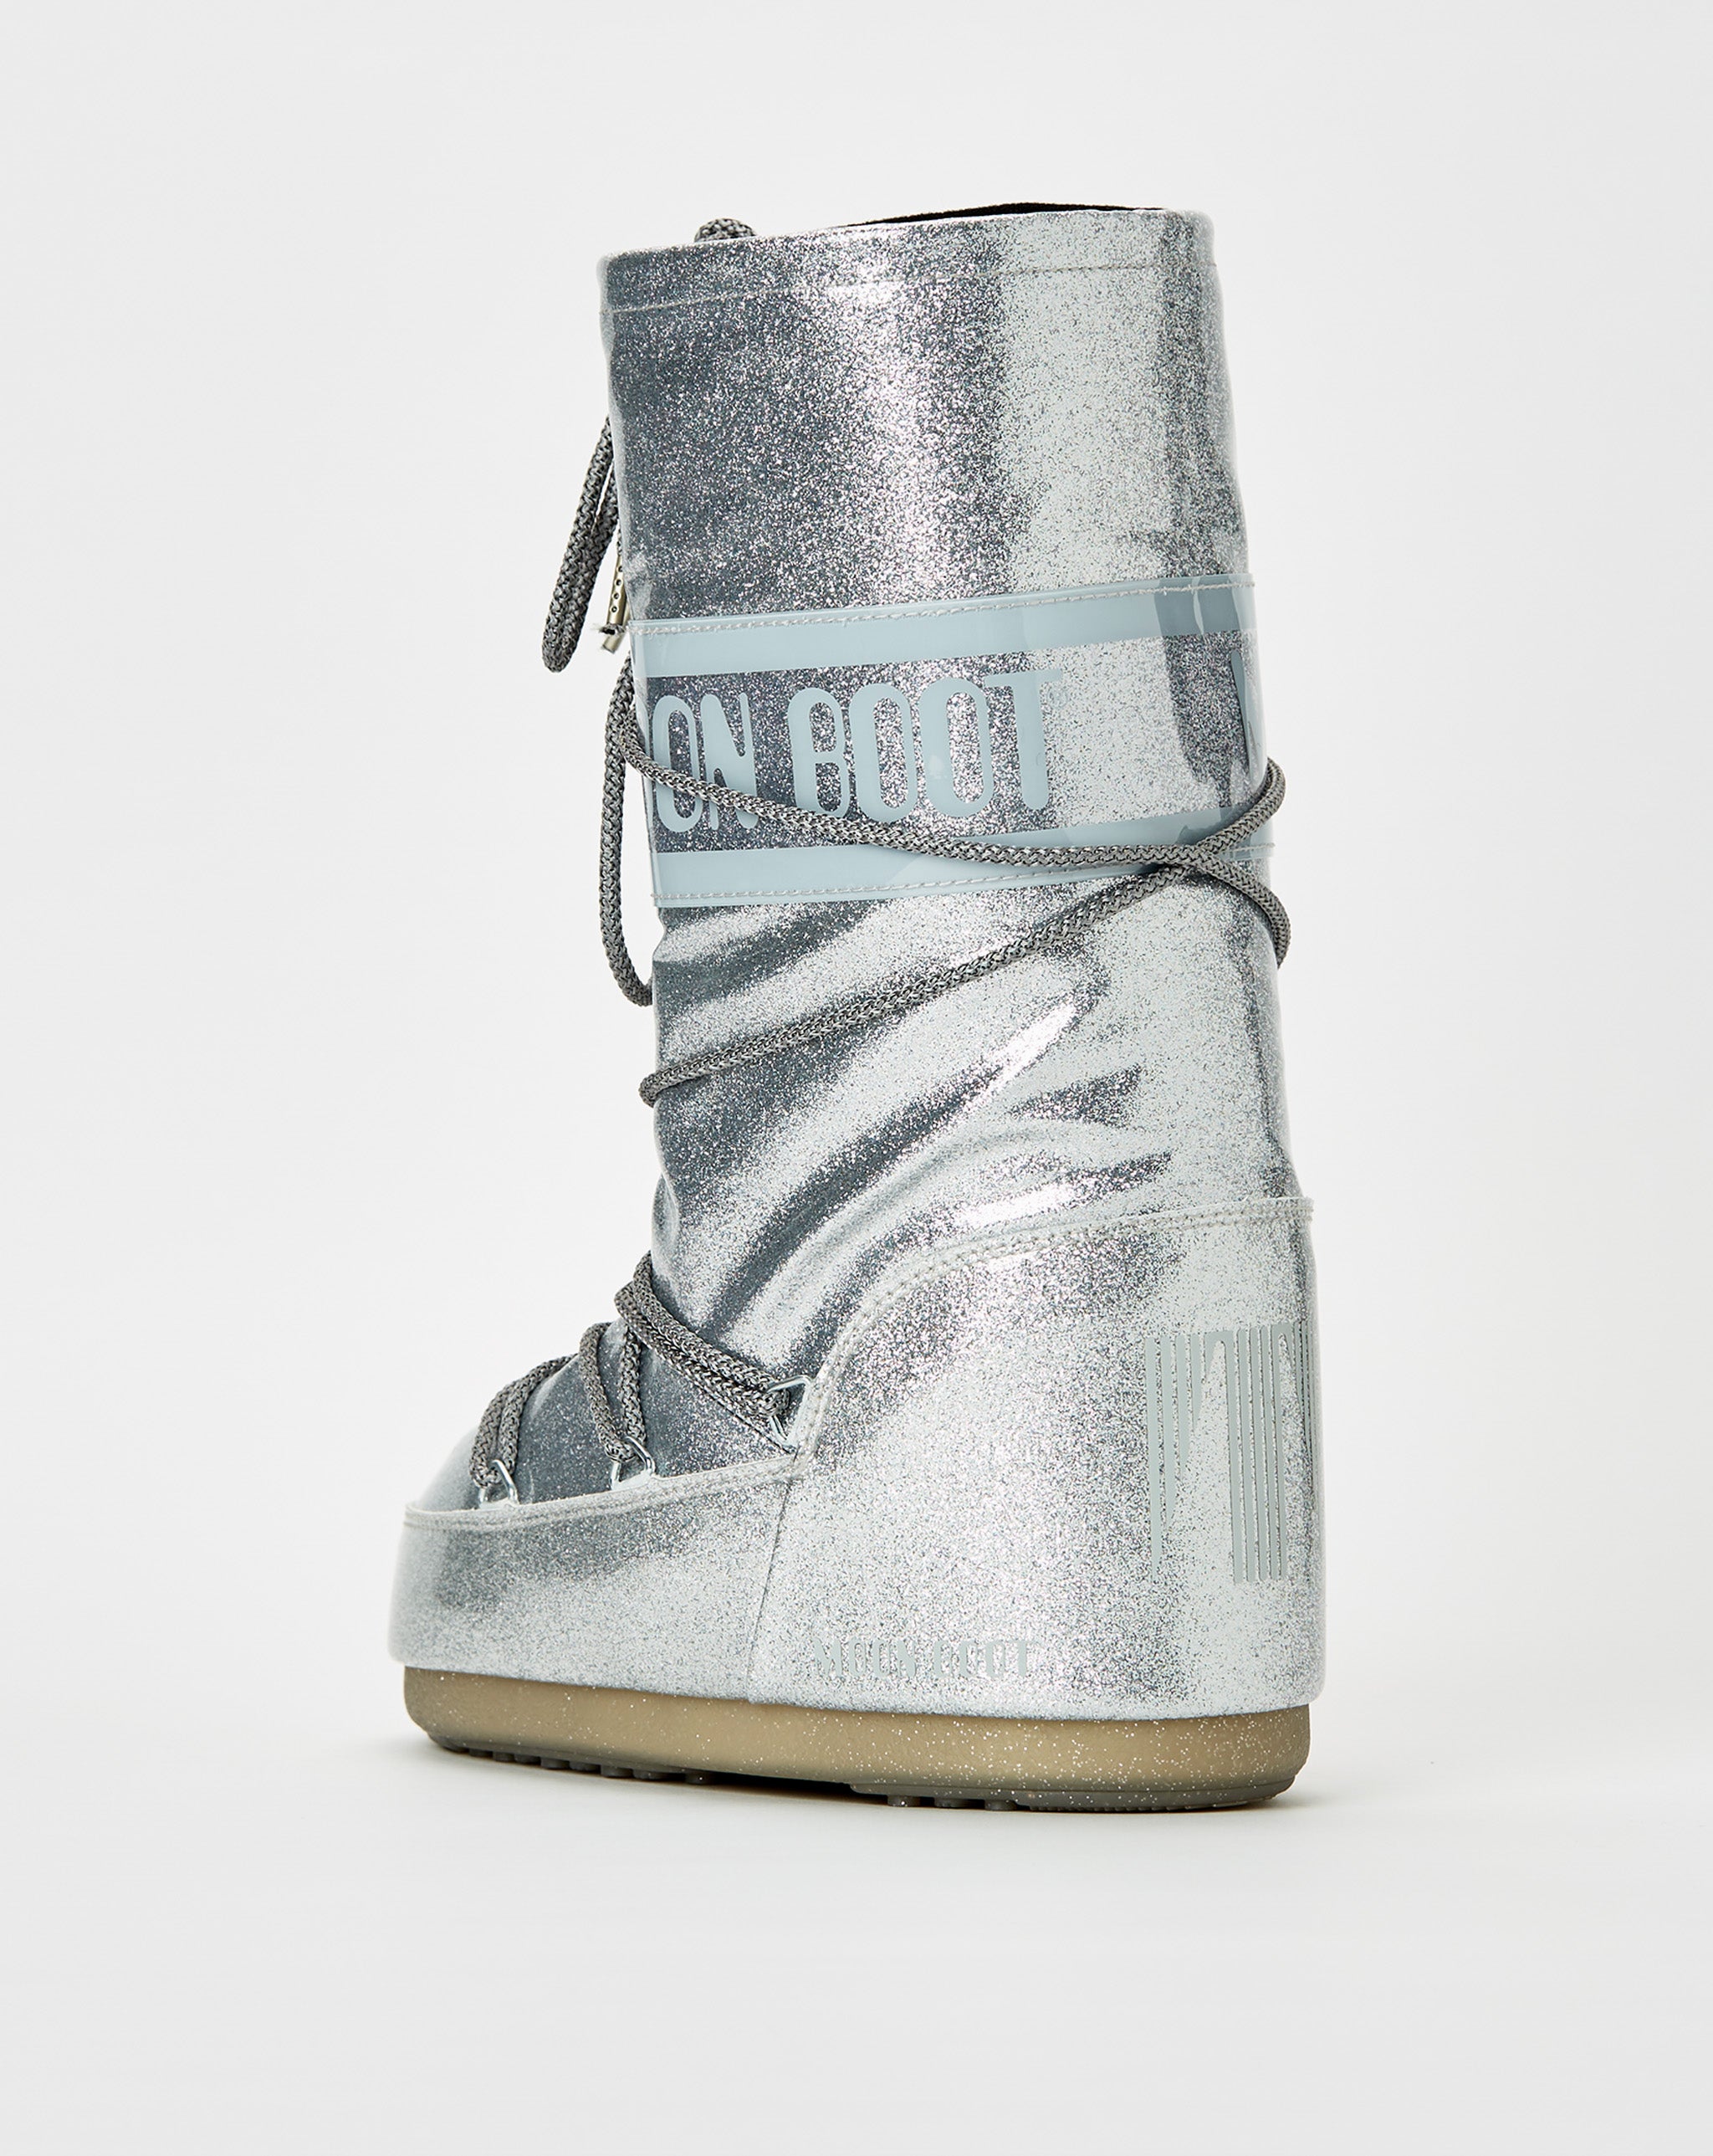 Moon Boot 000 Diamonds Hidden in His Shoes  - Cheap Urlfreeze Jordan outlet